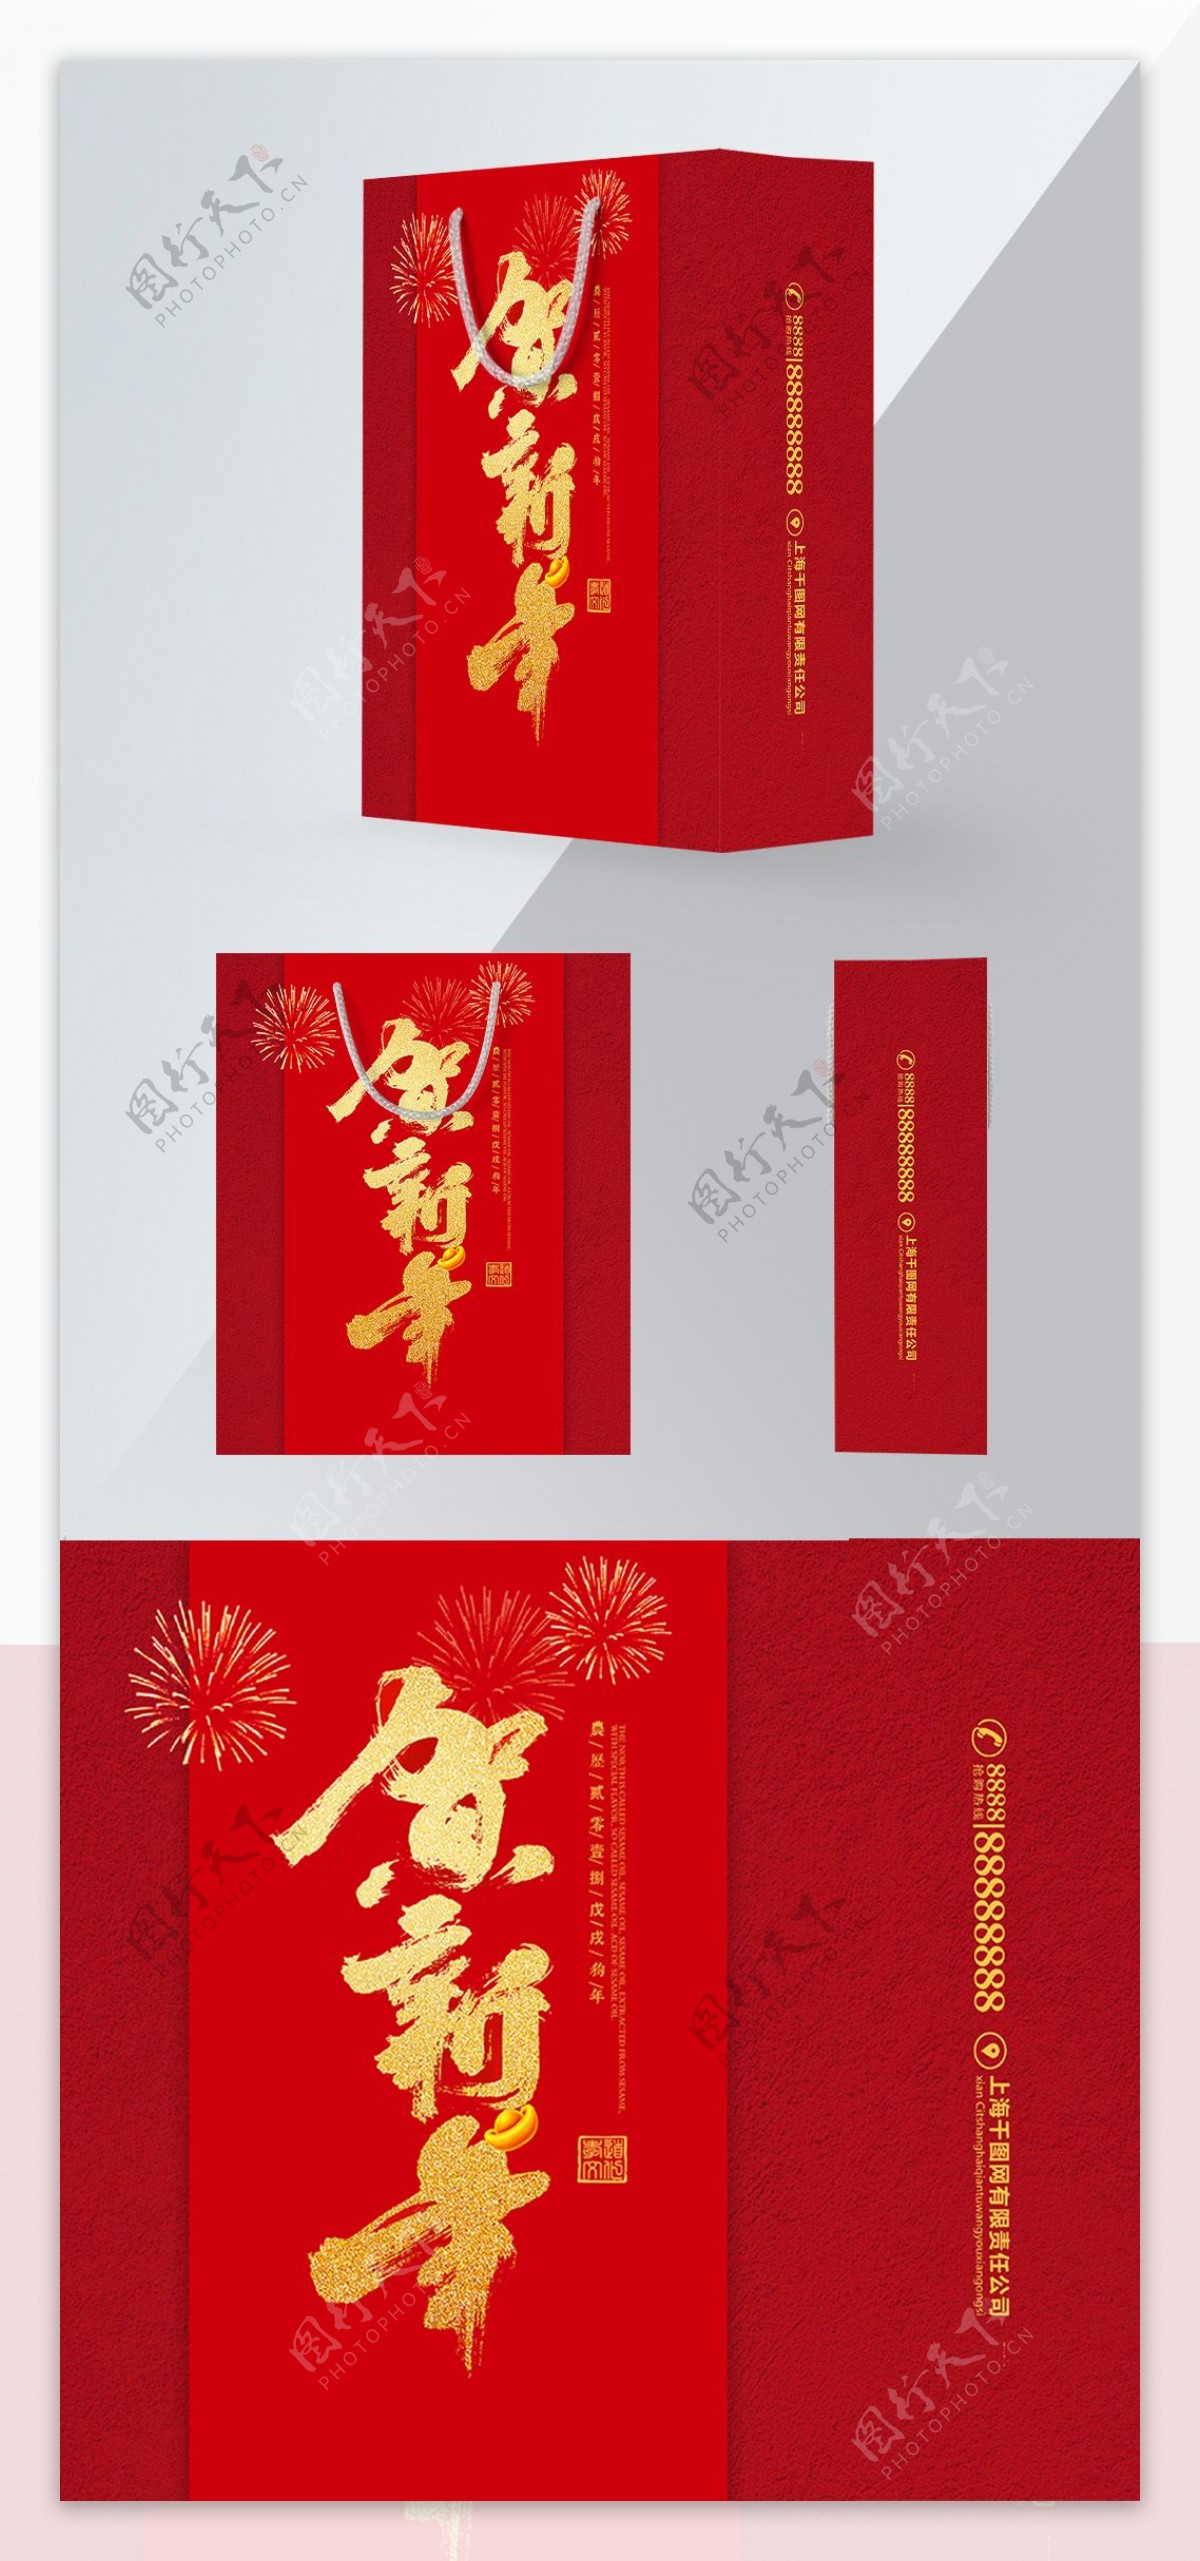 精品手提袋红色中国风新年礼品包装设计